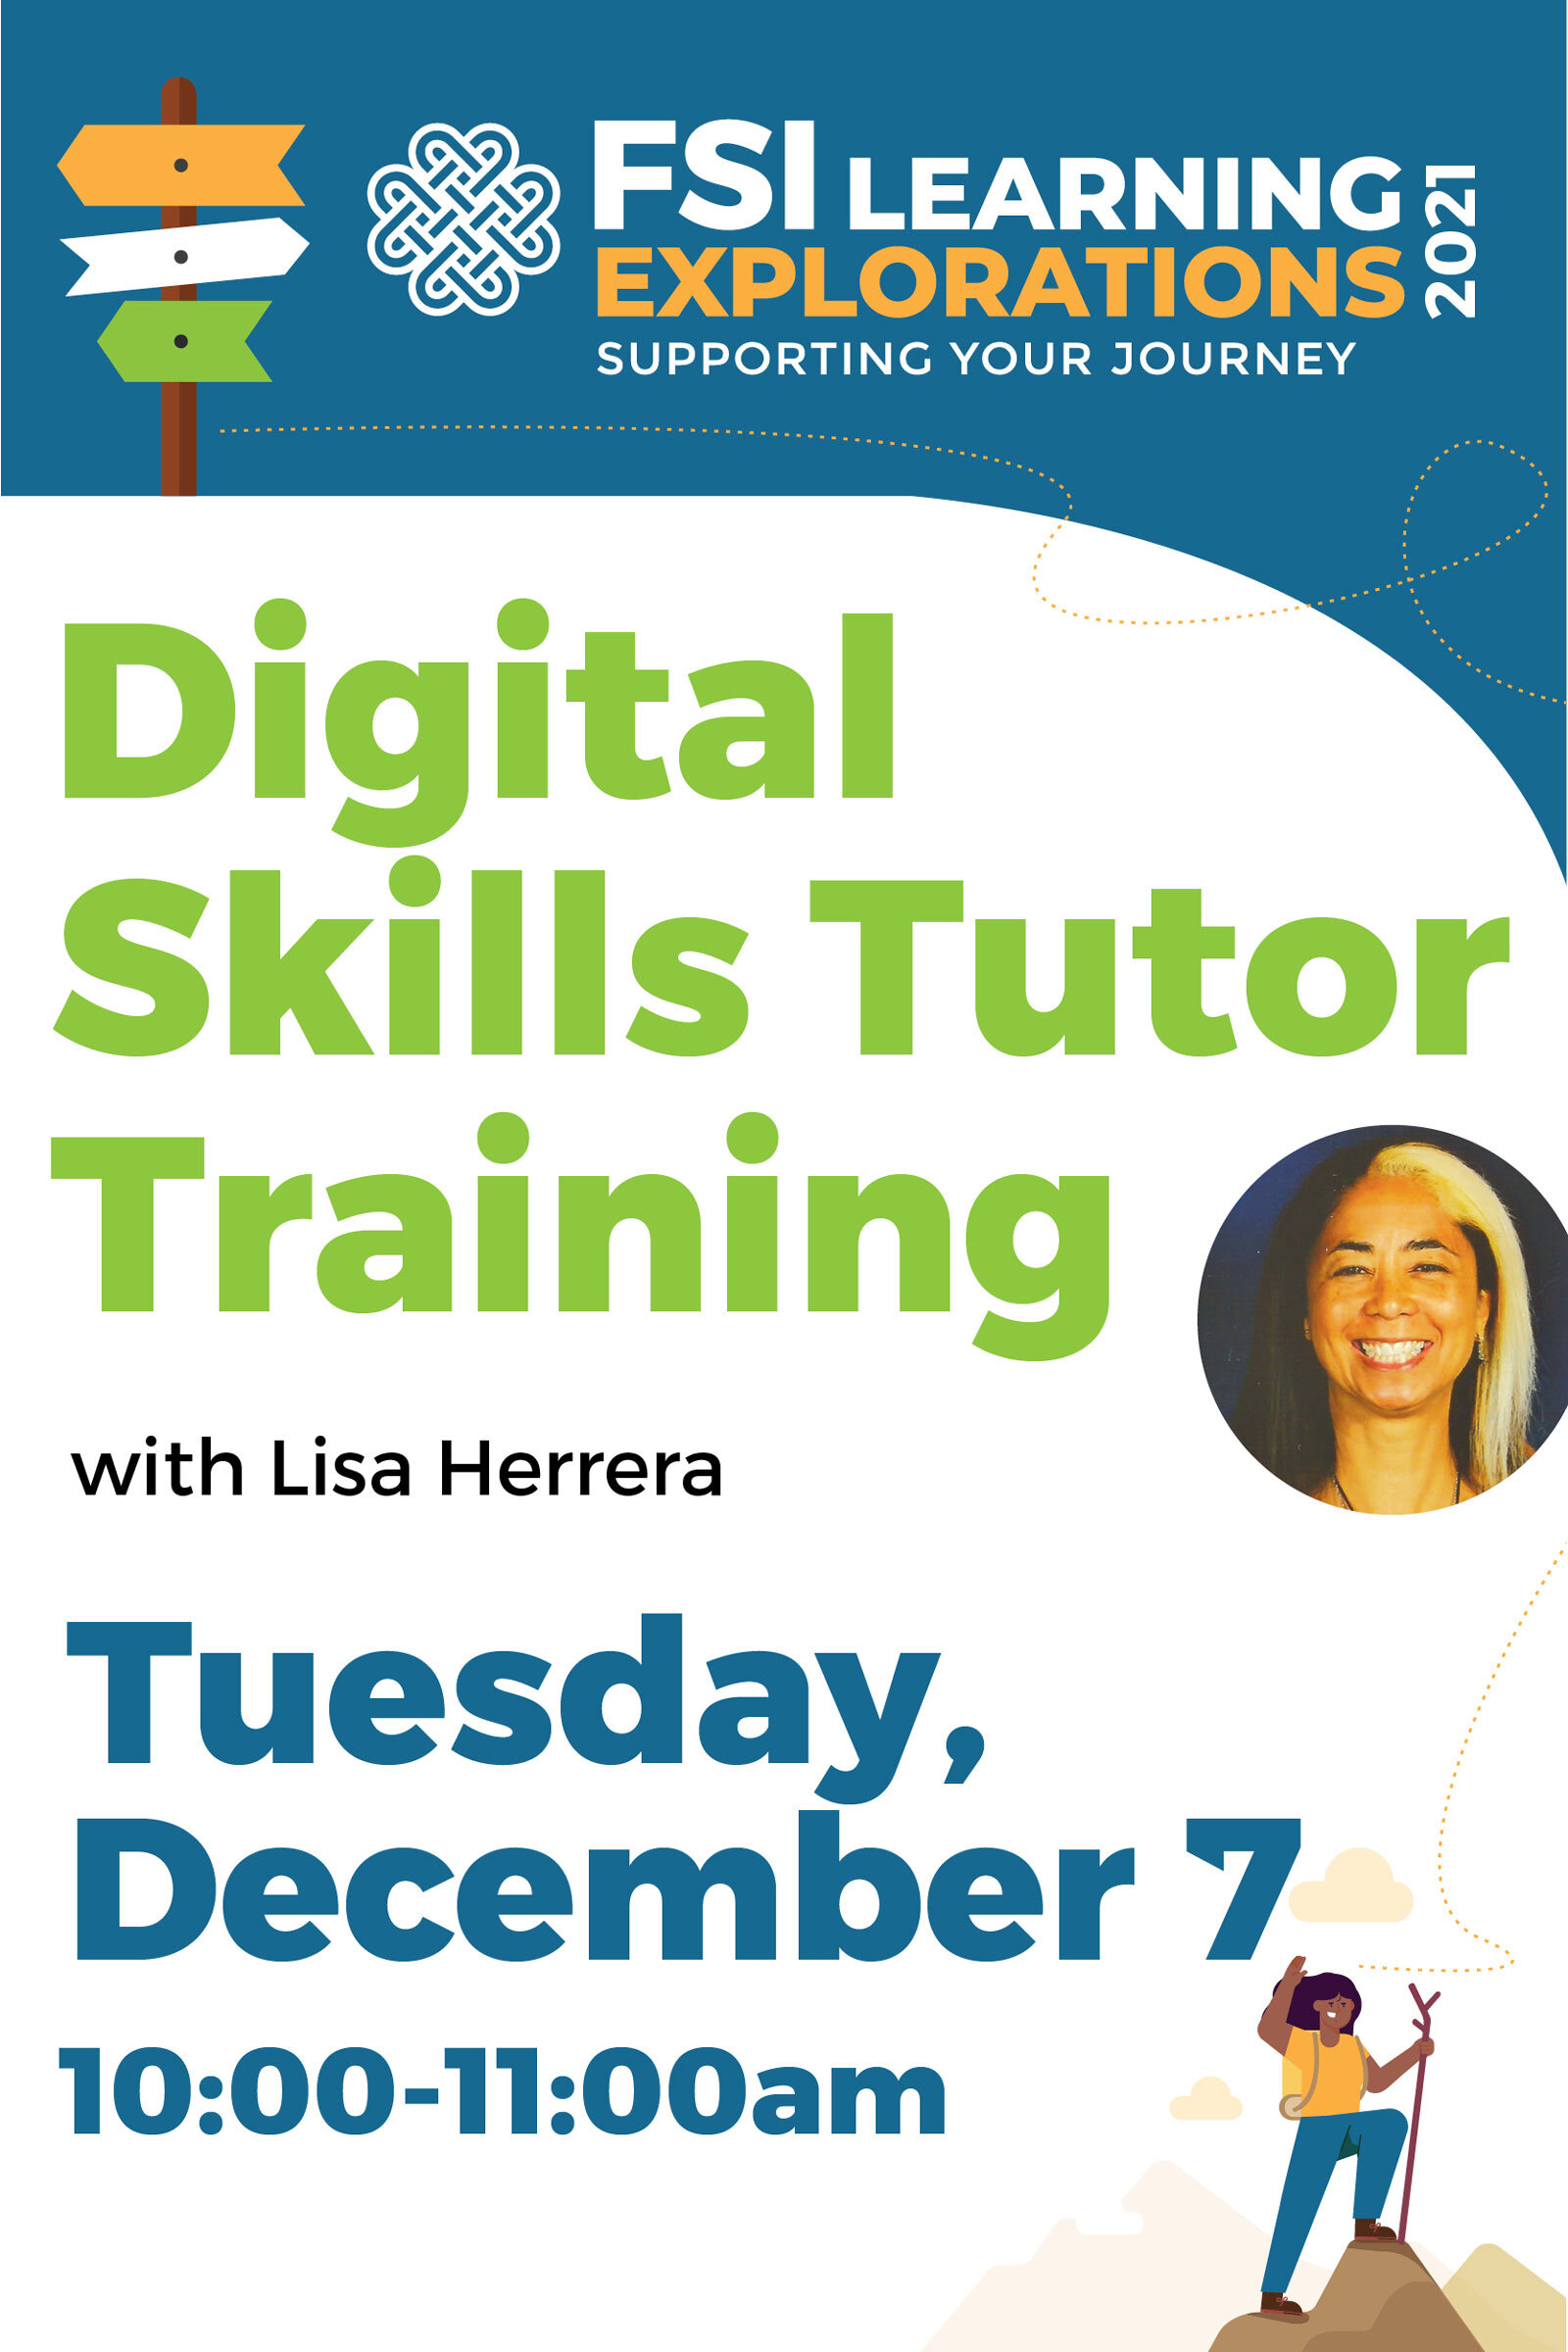 FSI Learning Explorations - Digital Skills Tutor Training